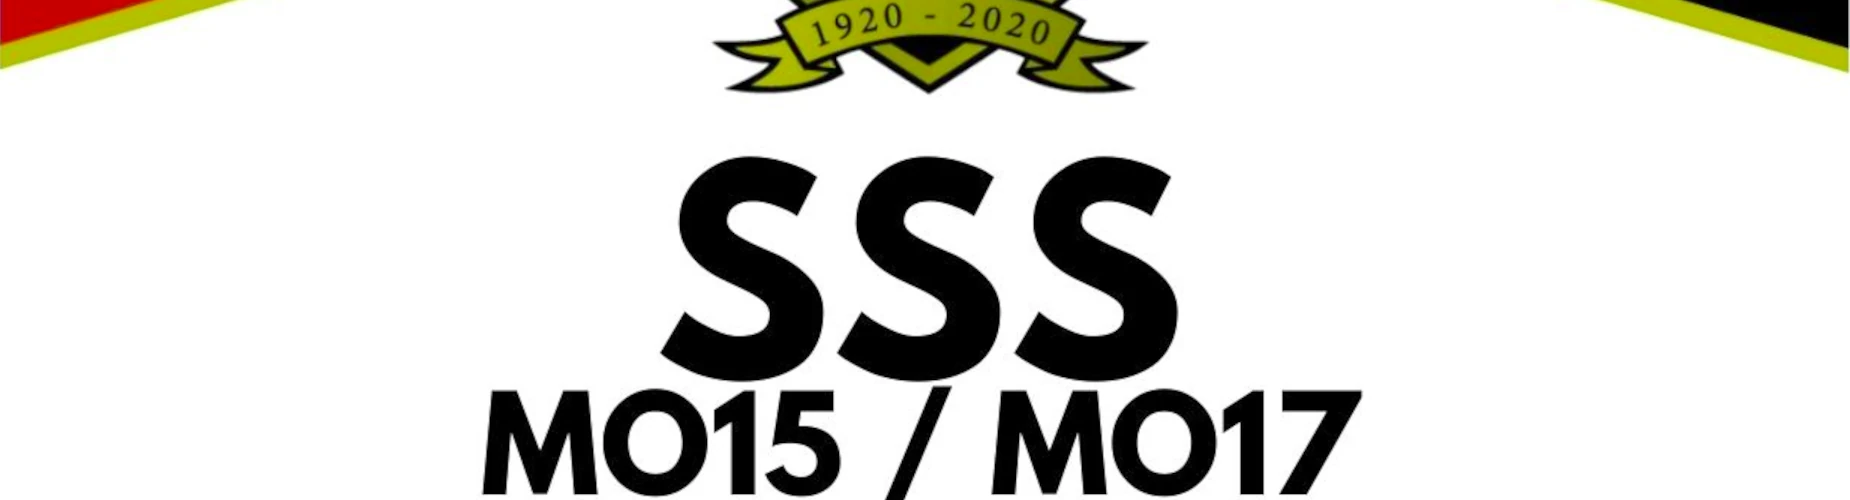 Banner - SSS MO16 en MO17 - SSS Klaaswaal - Klaaswaal